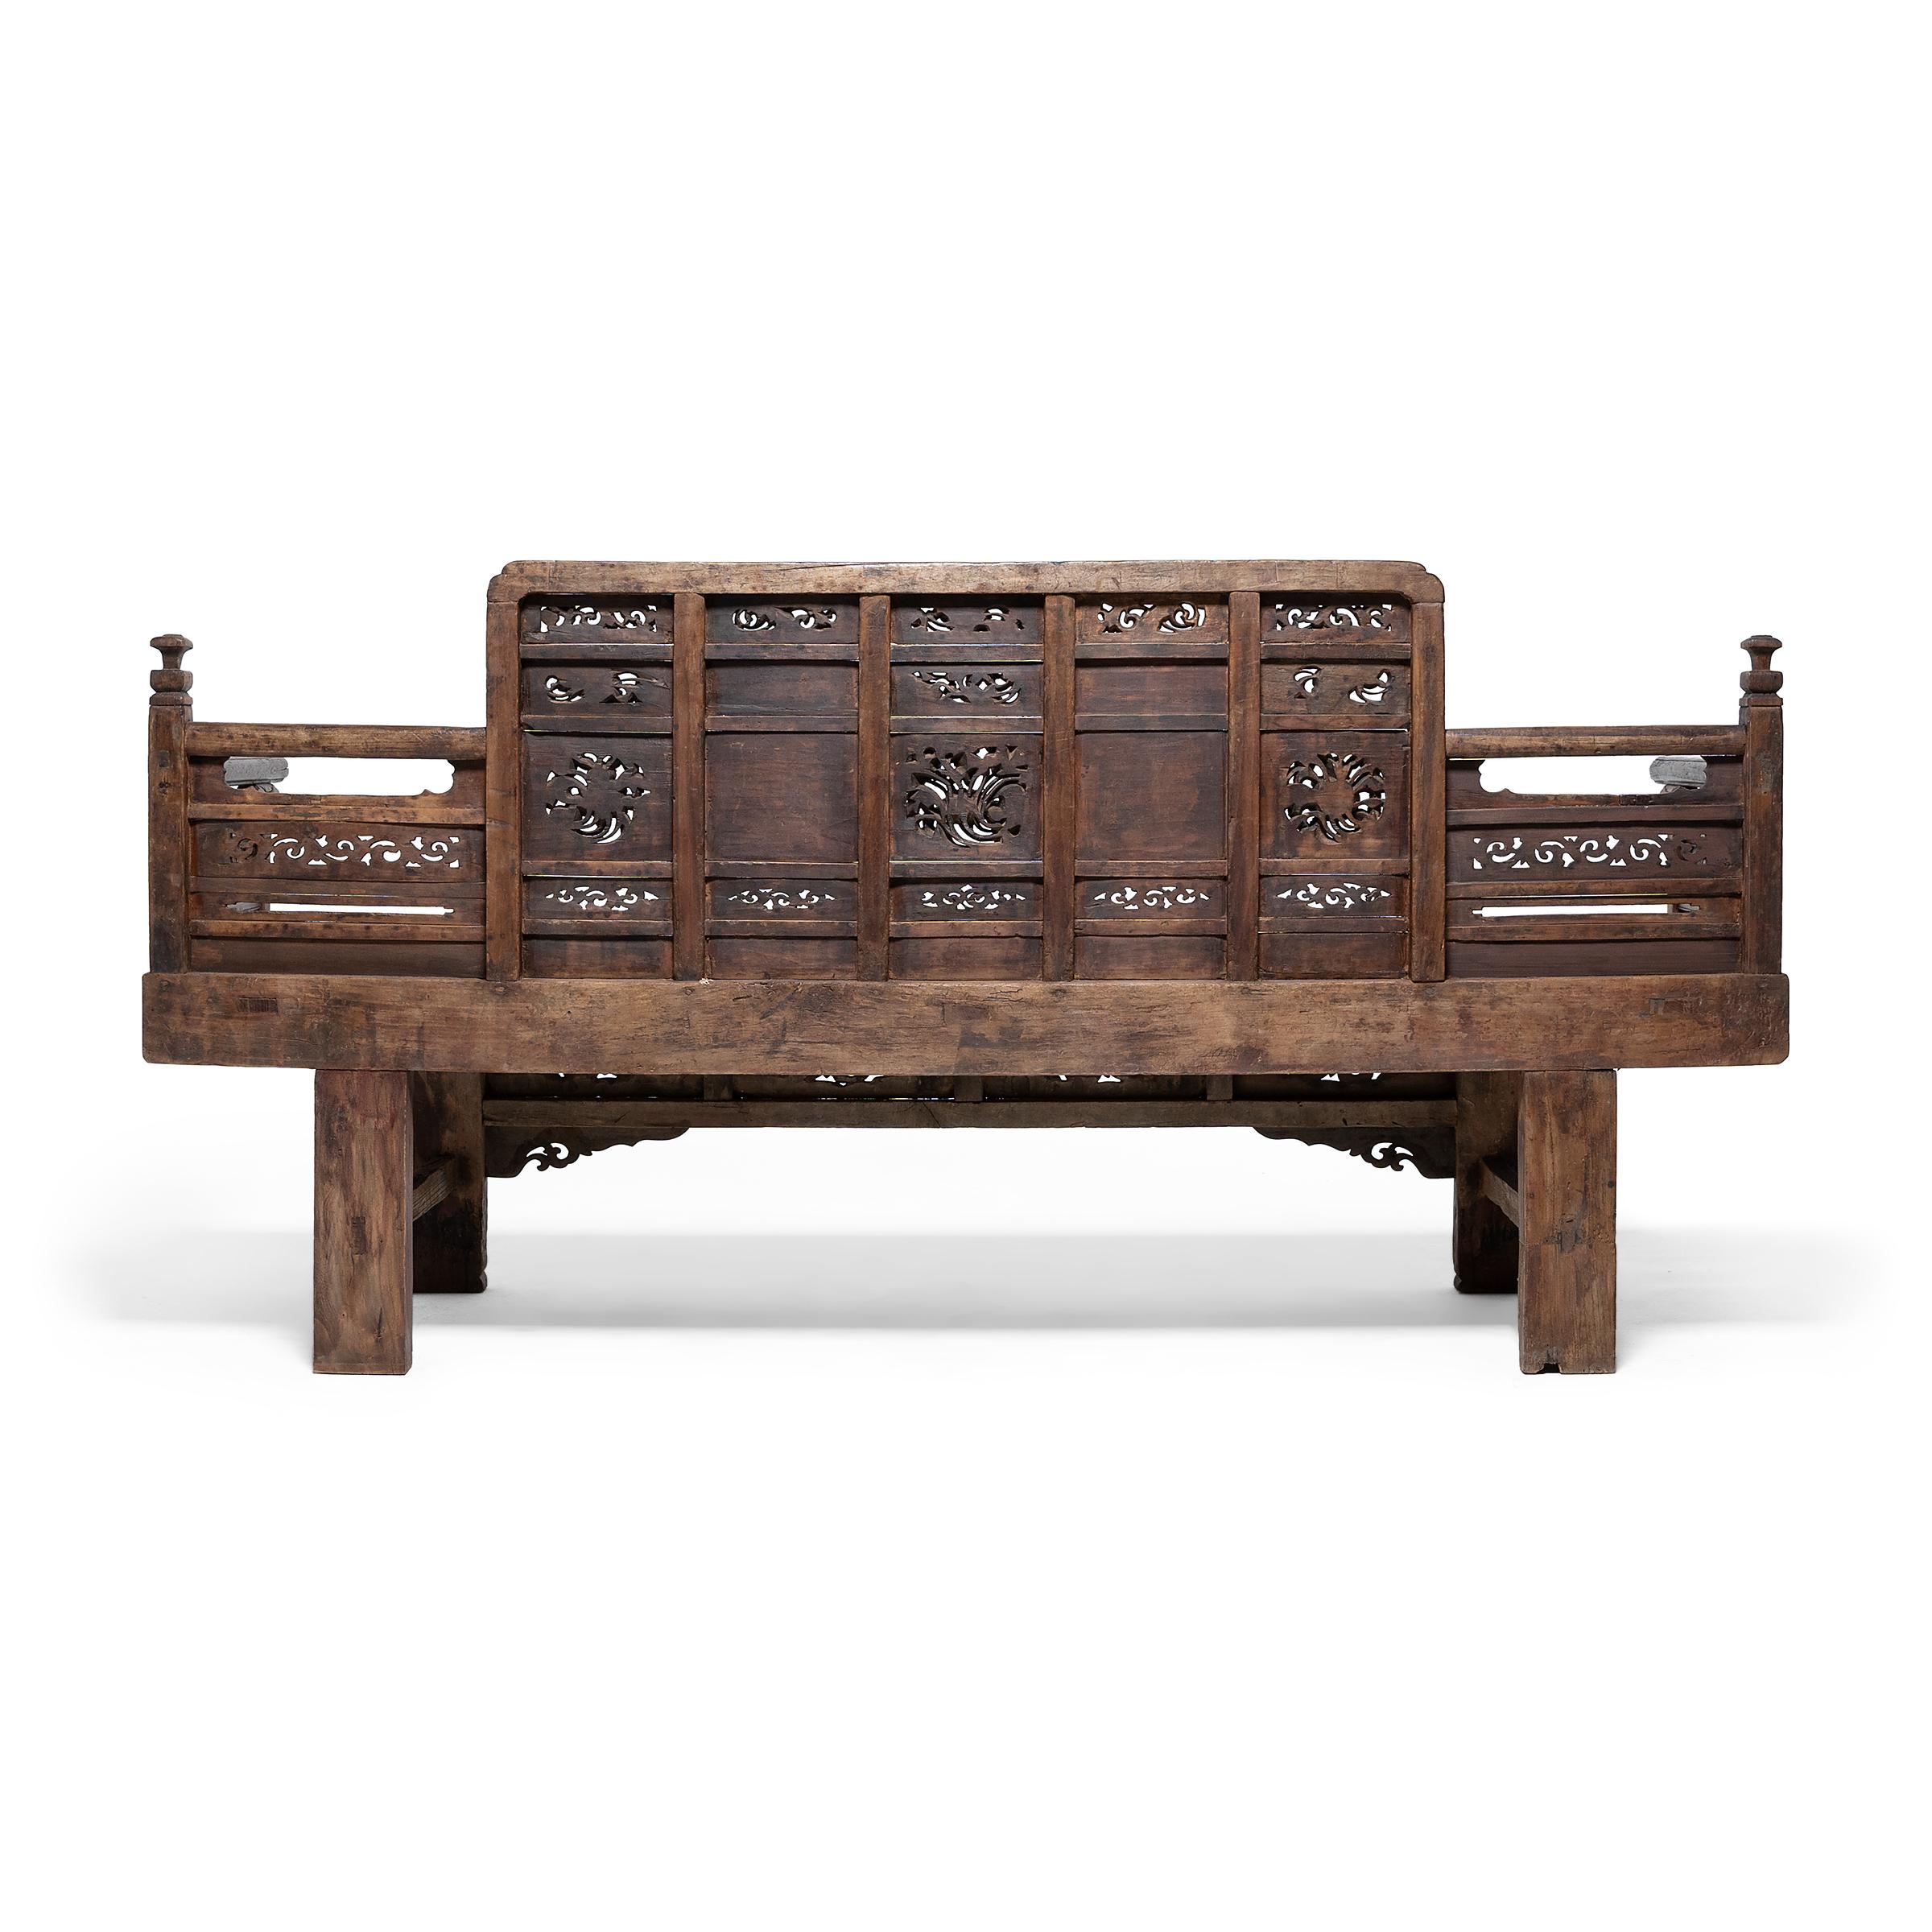 Aufwändig geschnitztes chinesisches Luohan-Bett, um 1550 (Chinesisch)